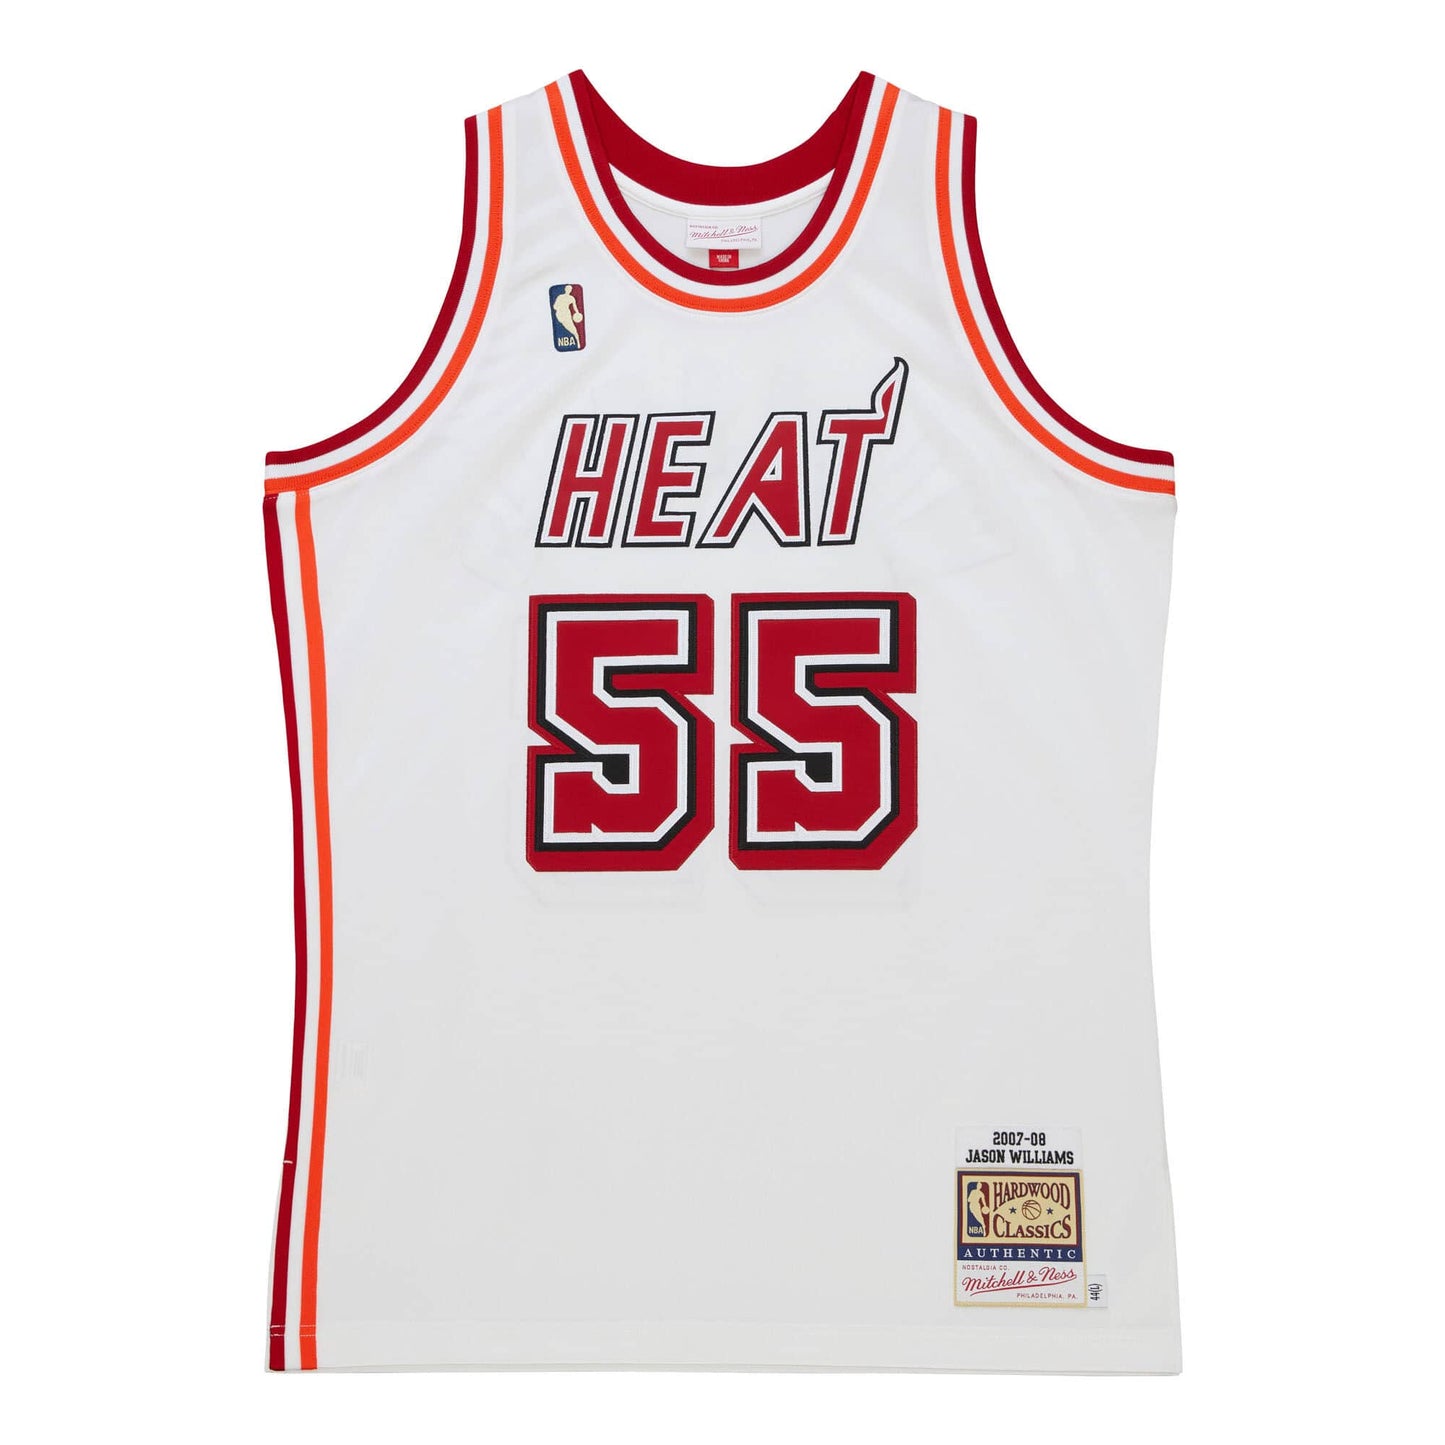 Authentic Jason Williams Miami Heat 2007-08 Jersey